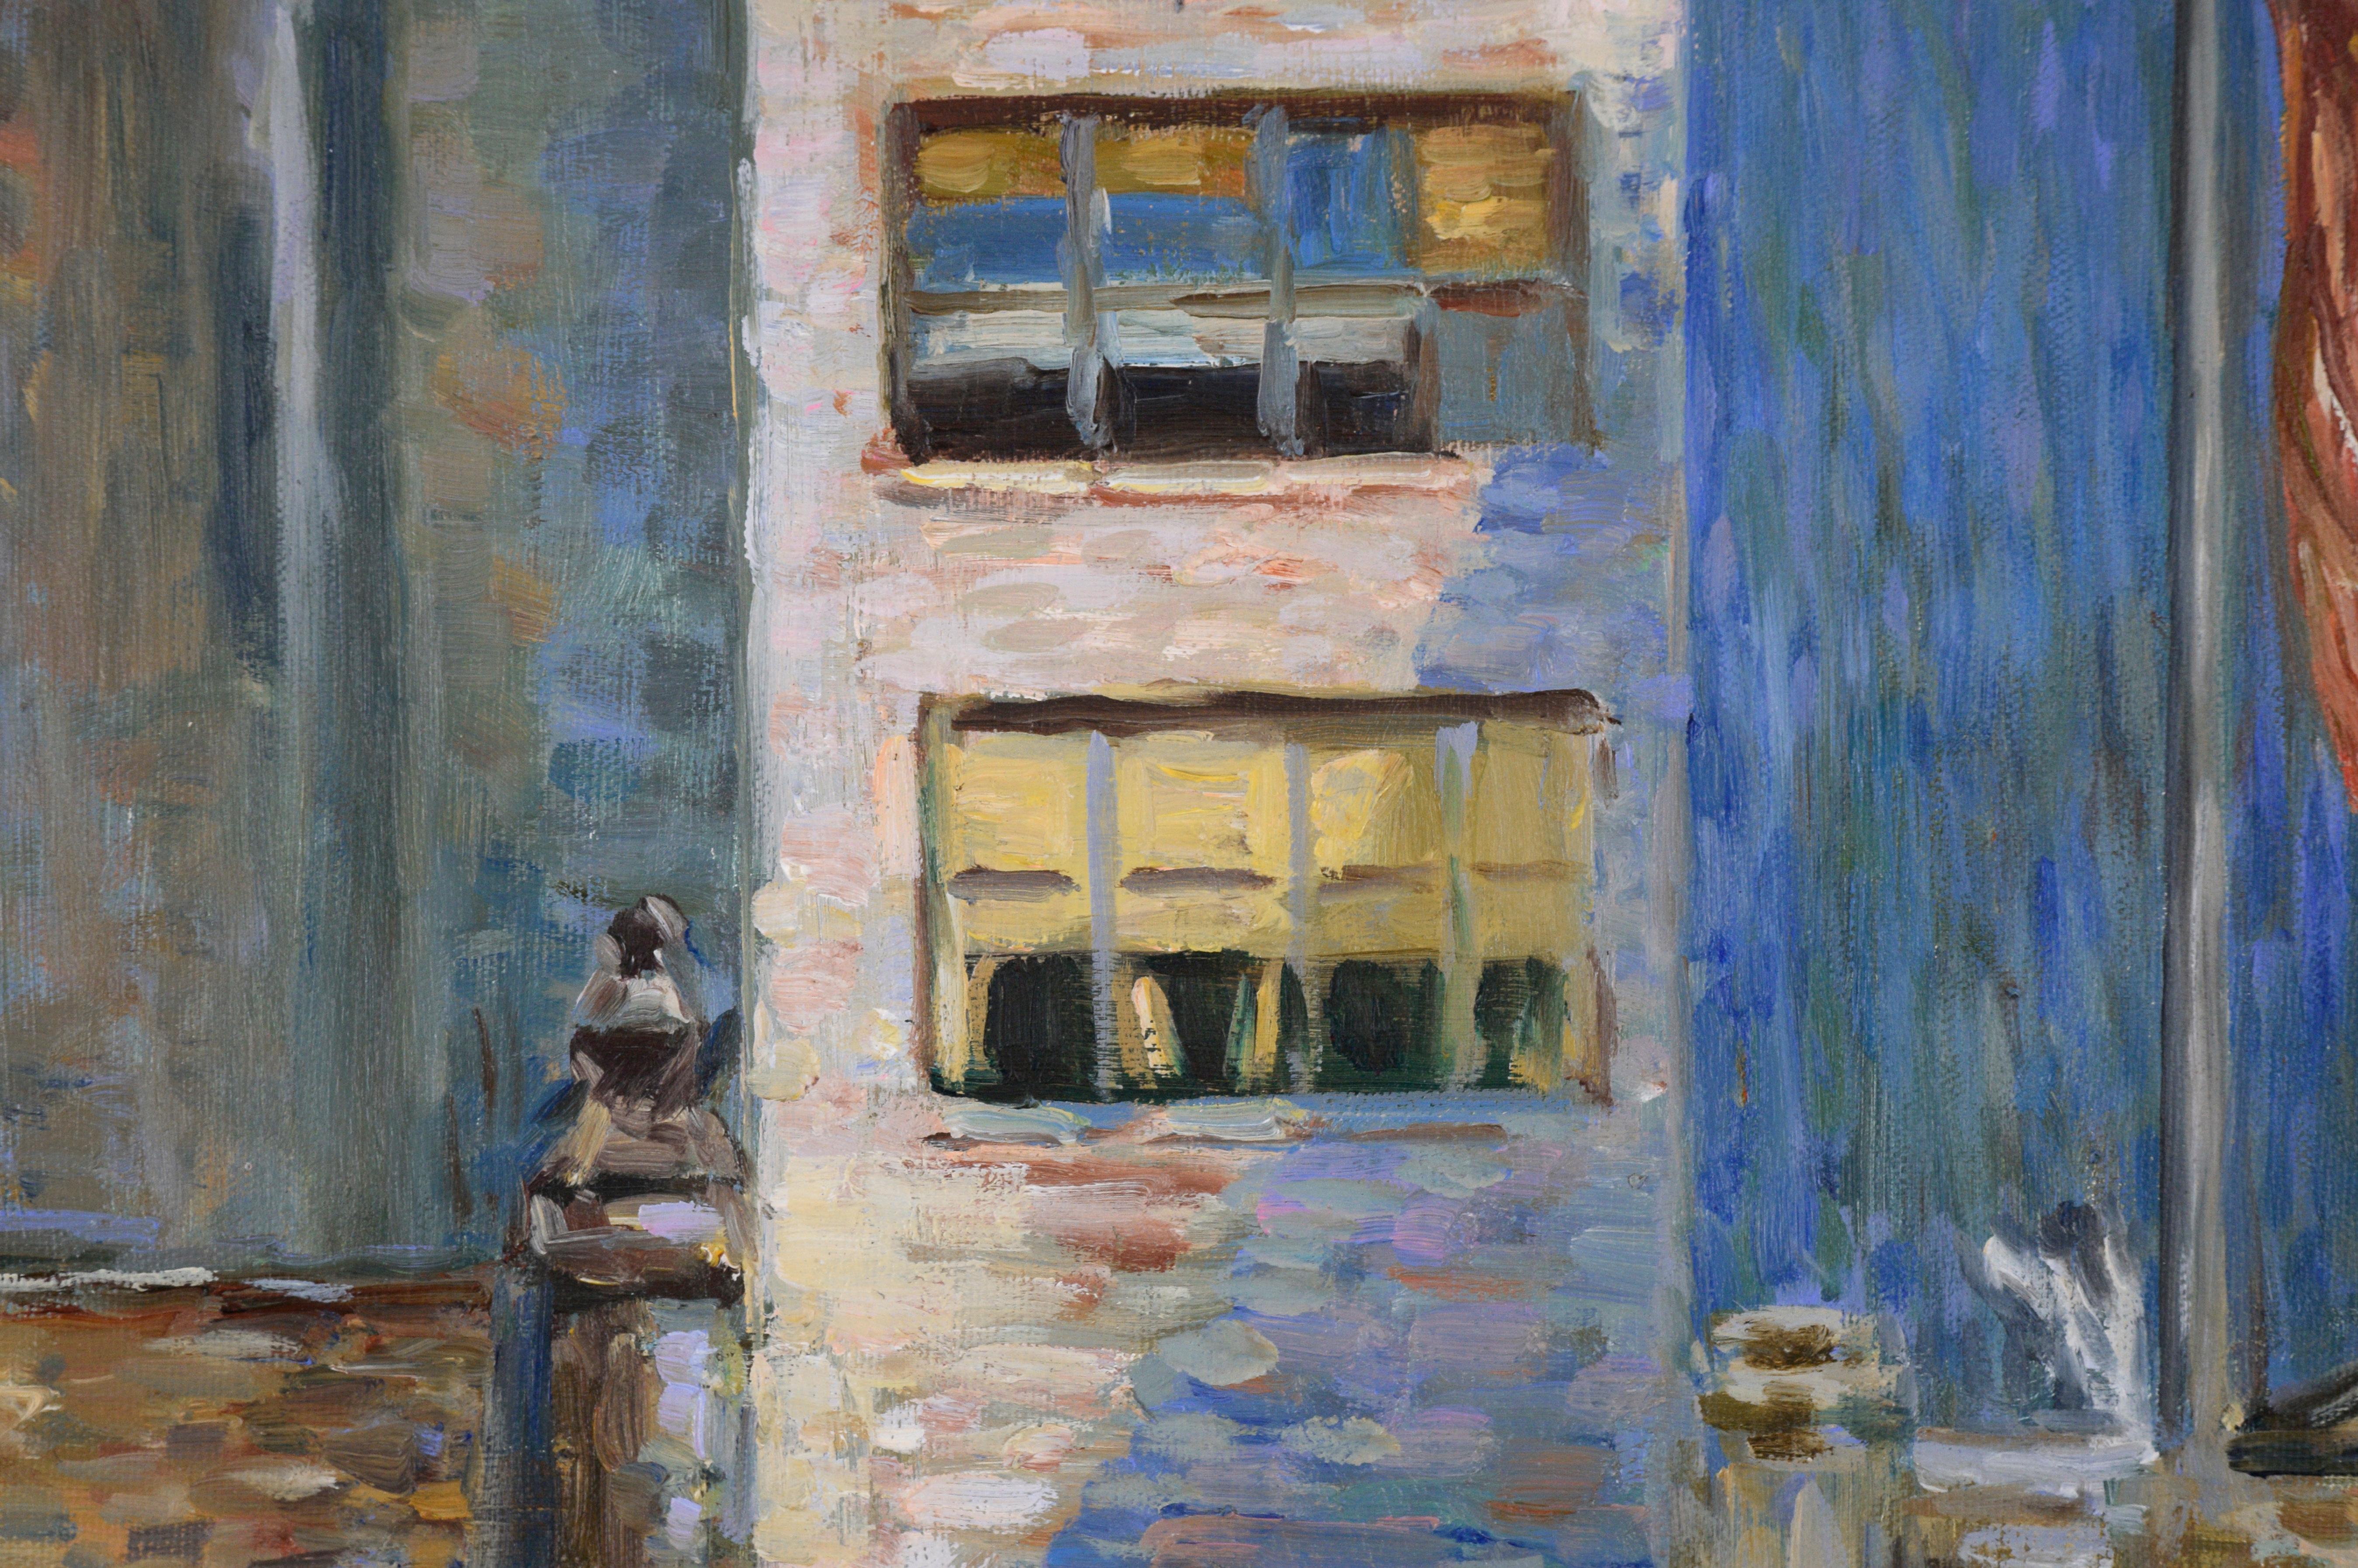 Dramatische Skyline von unbekanntem Künstler Cole (20. Jahrhundert). Eine Reihe von Wohnhäusern ist in kurzen, farbigen Pinselstrichen, fast in einem pointillistischen Stil, wiedergegeben. Neben den Gebäuden hängt eine amerikanische Flagge an einem